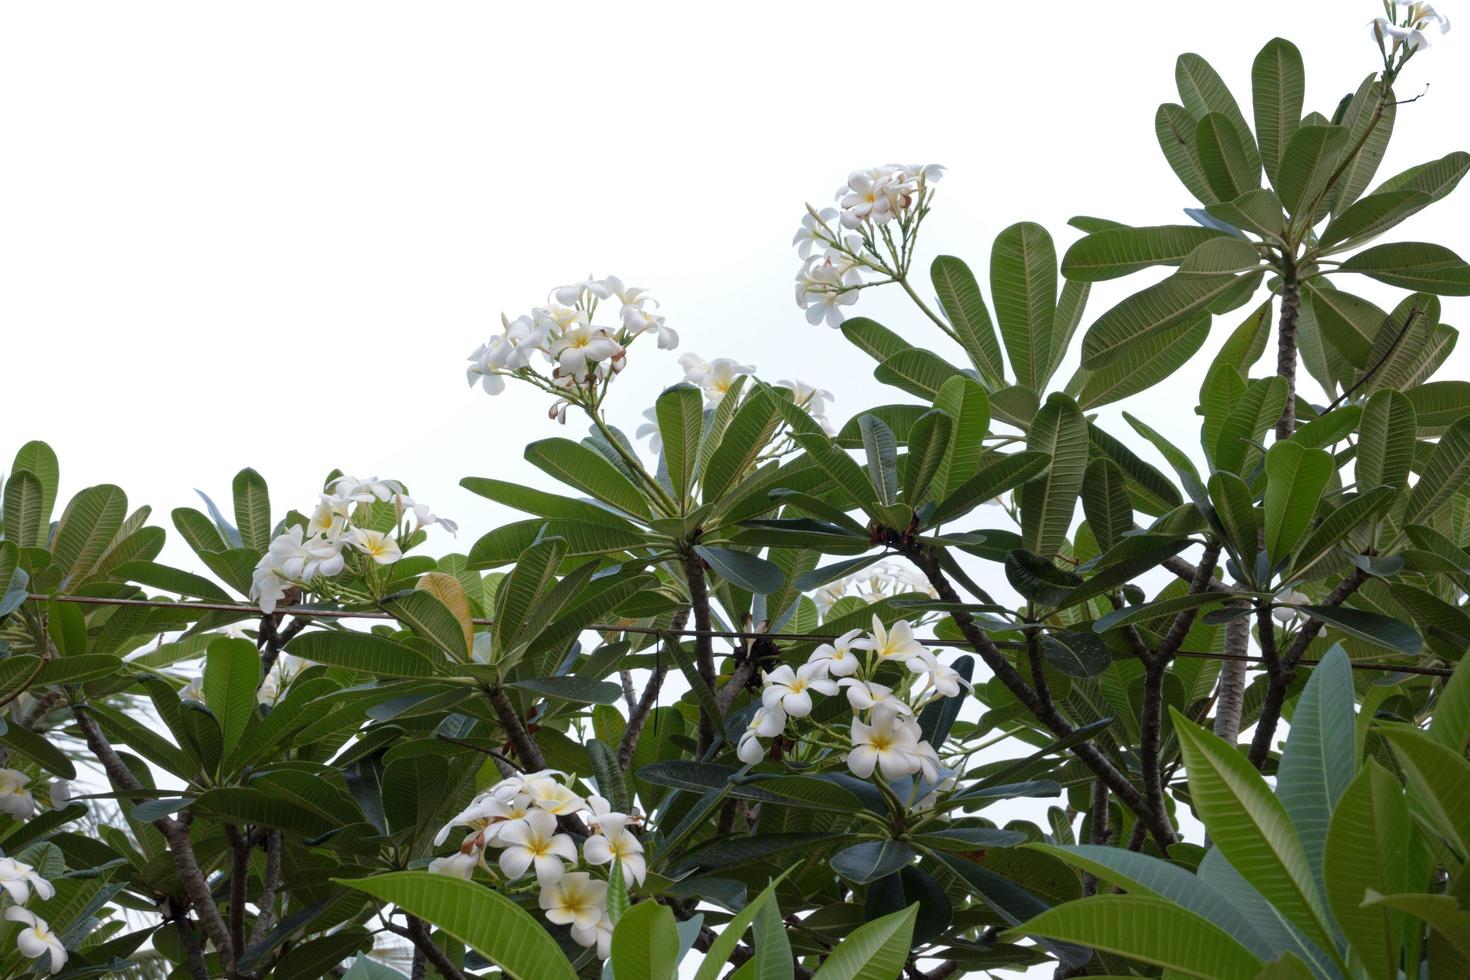 Frangipani-Blume isoliert auf weißem Hintergrund foto